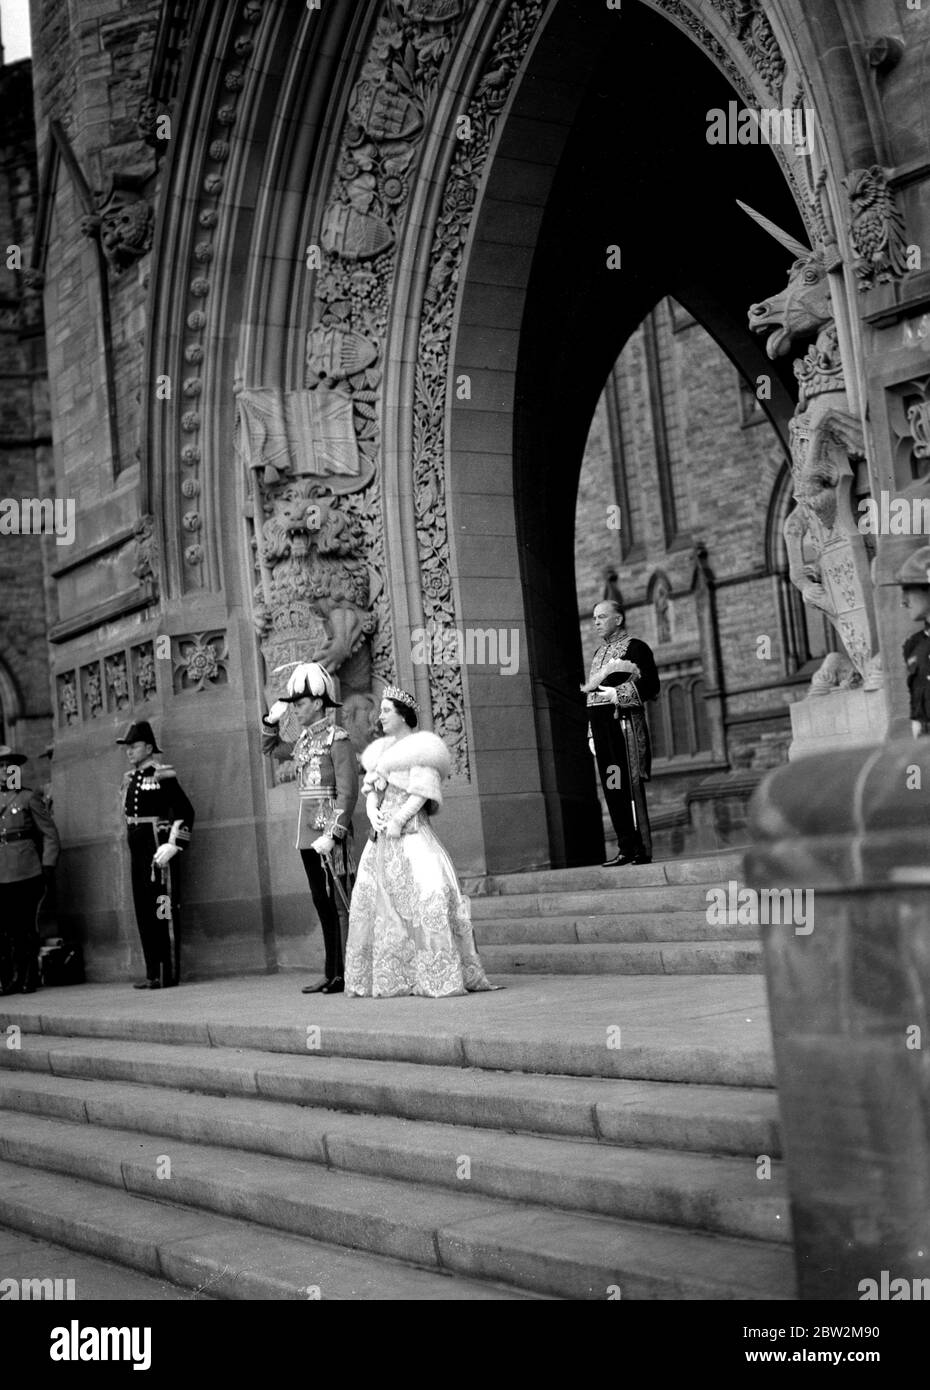 Die Königliche Tour durch Kanada und die USA von König George VI. Und Königin Elizabeth, 1939 und der König grüßt, als er und die Königin auf den Stufen des Bundesgebäudes in Ottawa stehen, nachdem der König auf dem Thron eines seiner Parlamente gesessen hatte. Hinter ihnen, im gotischen Torbogen, steht der kanadische Premierminister, Herr W. L. Mackenzie King. Stockfoto